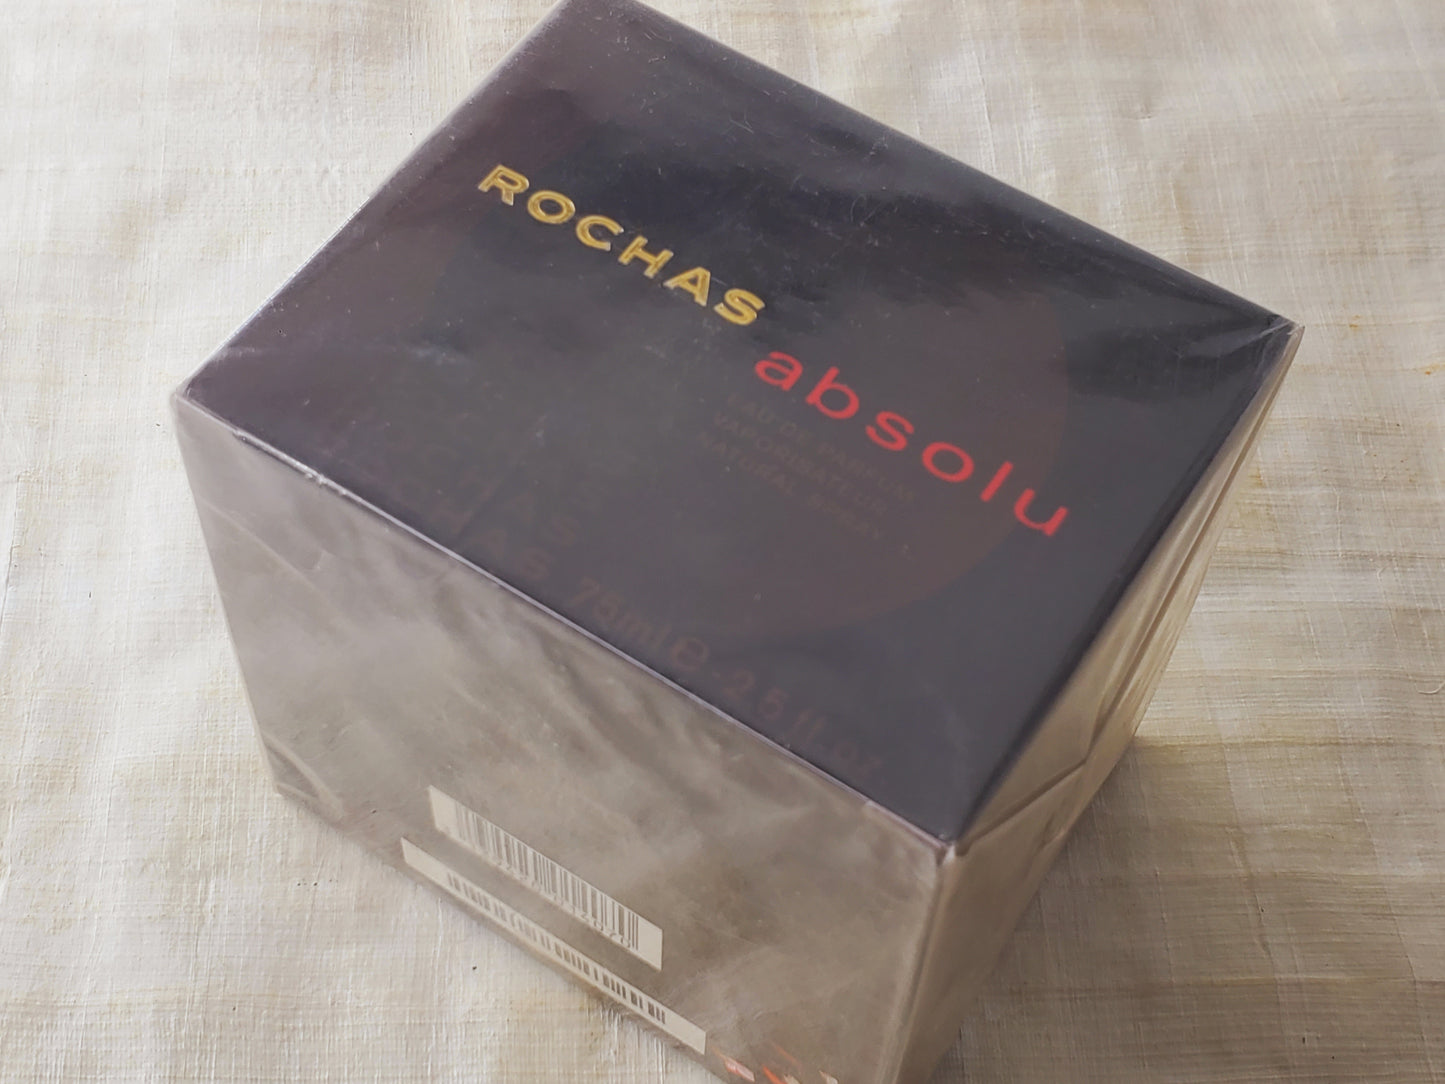 Absolu Rochas for women EDP Spray 75 ml 2.5 oz, Vintage, Rare, Sealed